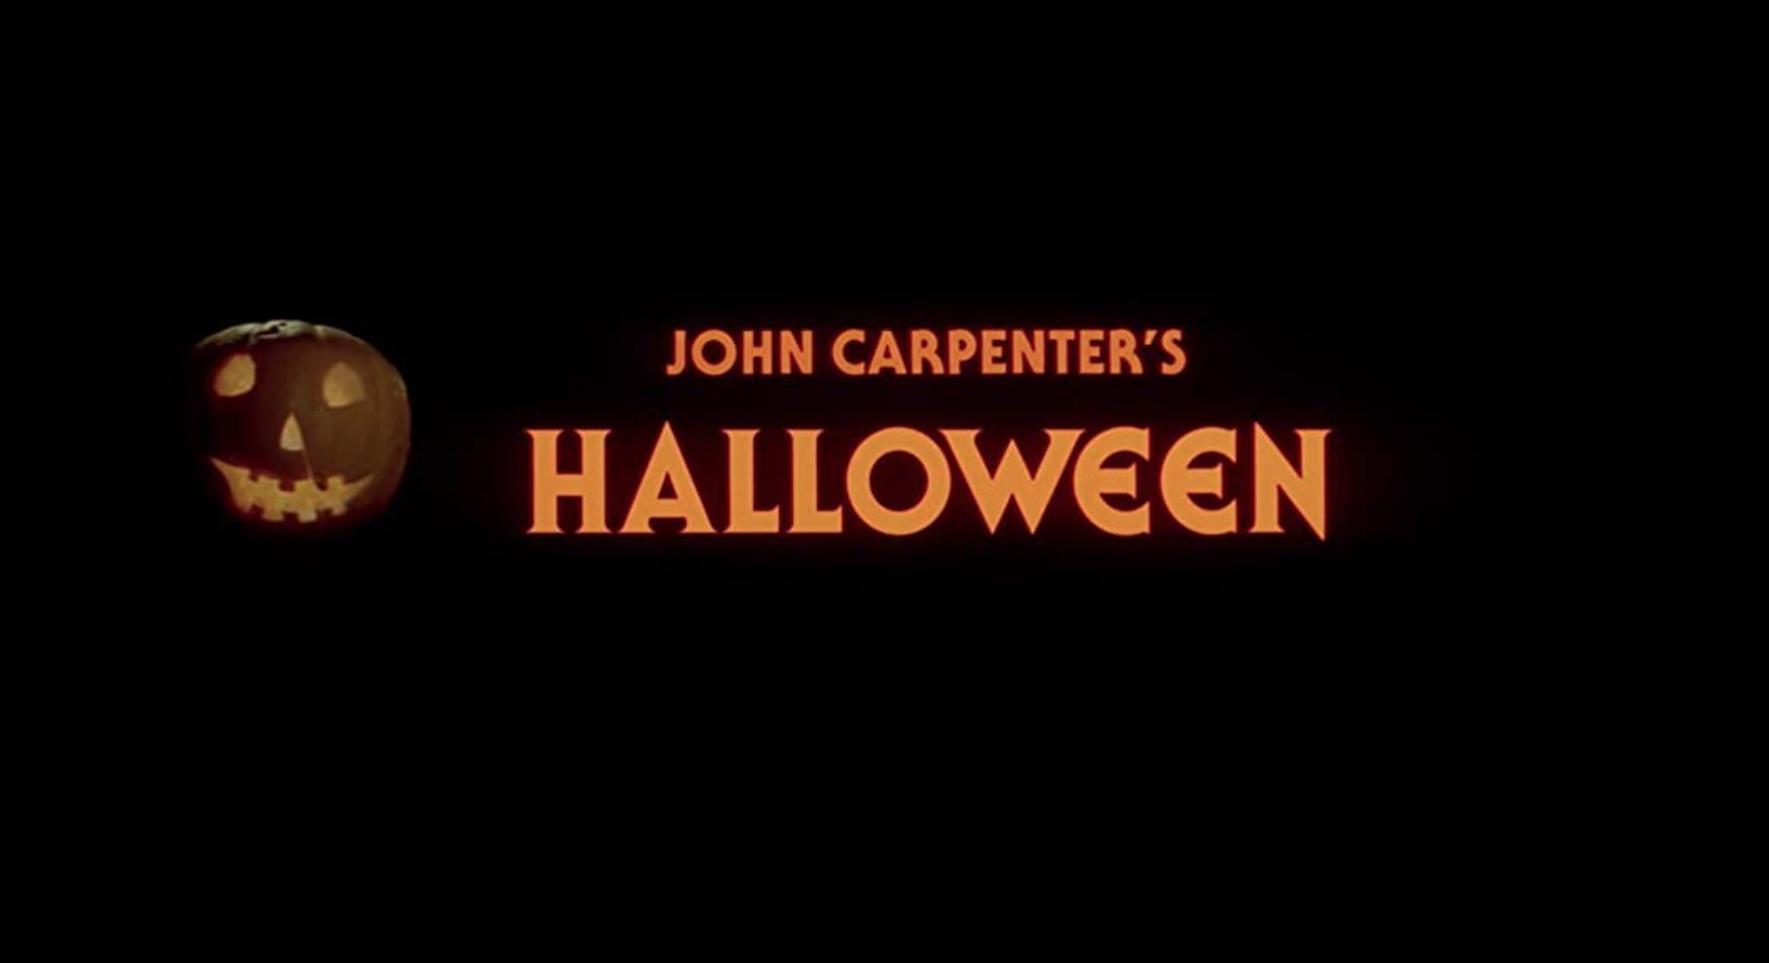 Filme: Das waren unsere Kinojahre: Halloween | Season 3 | Episode 1